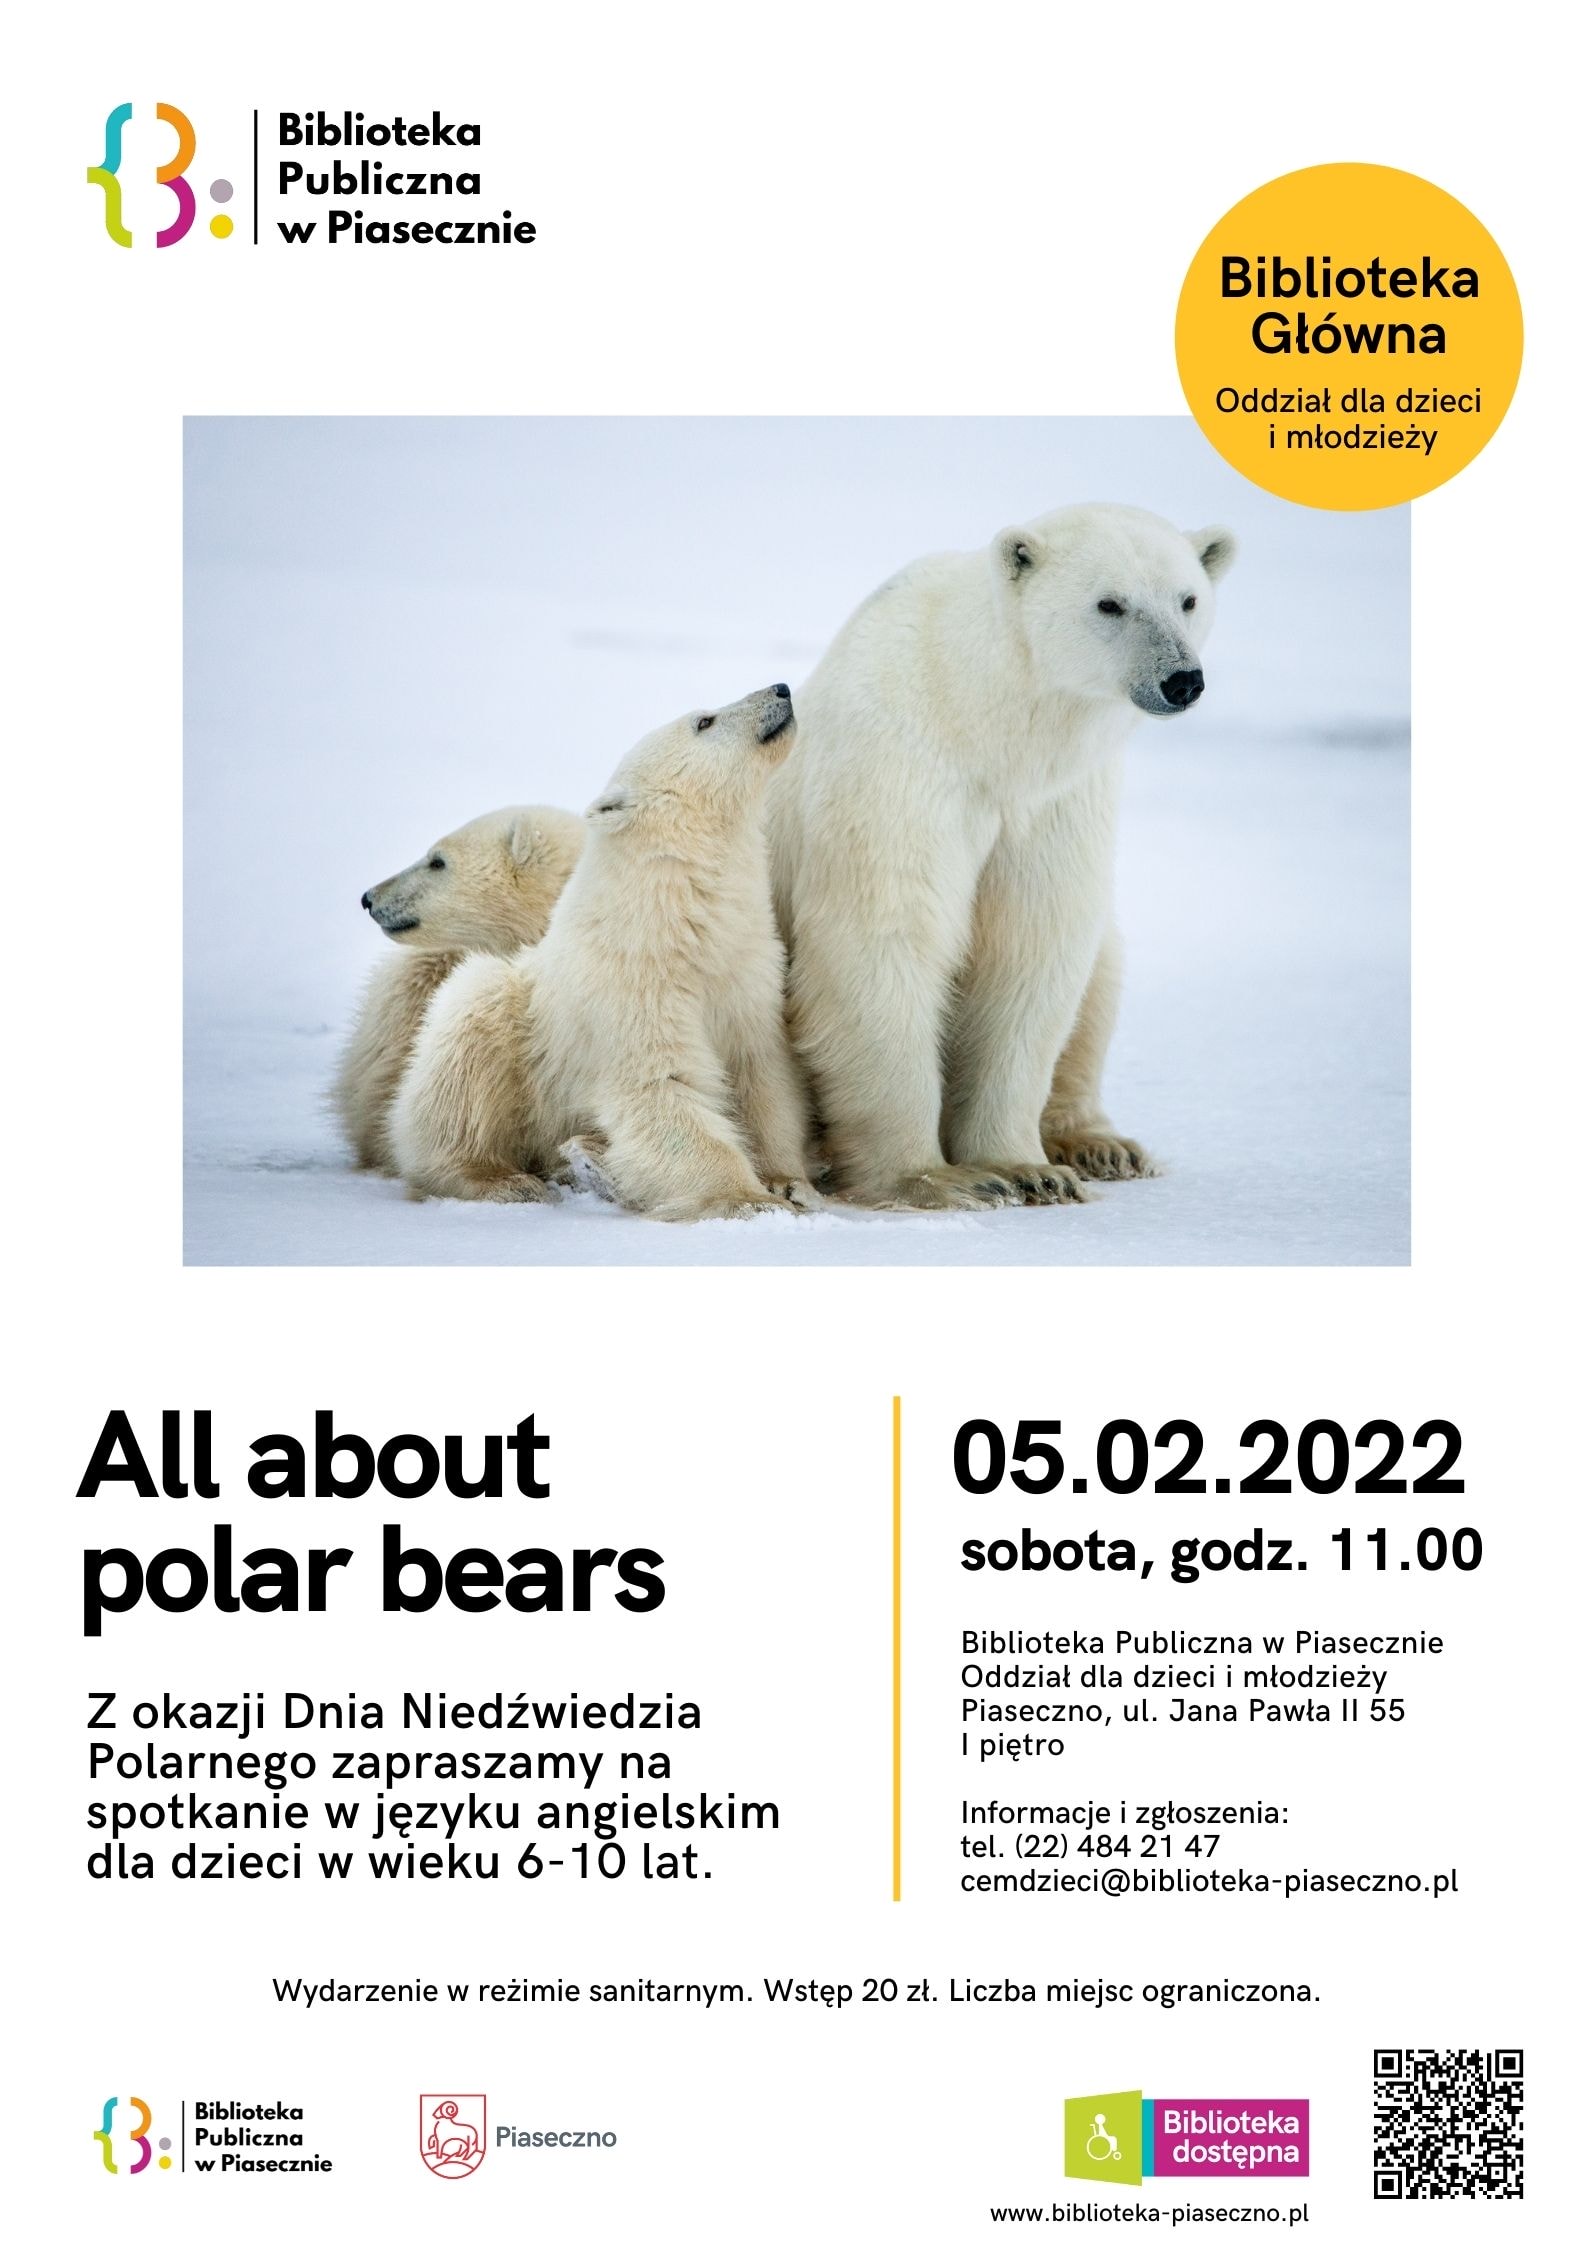 All about polar bears - warsztaty w języku angielskim